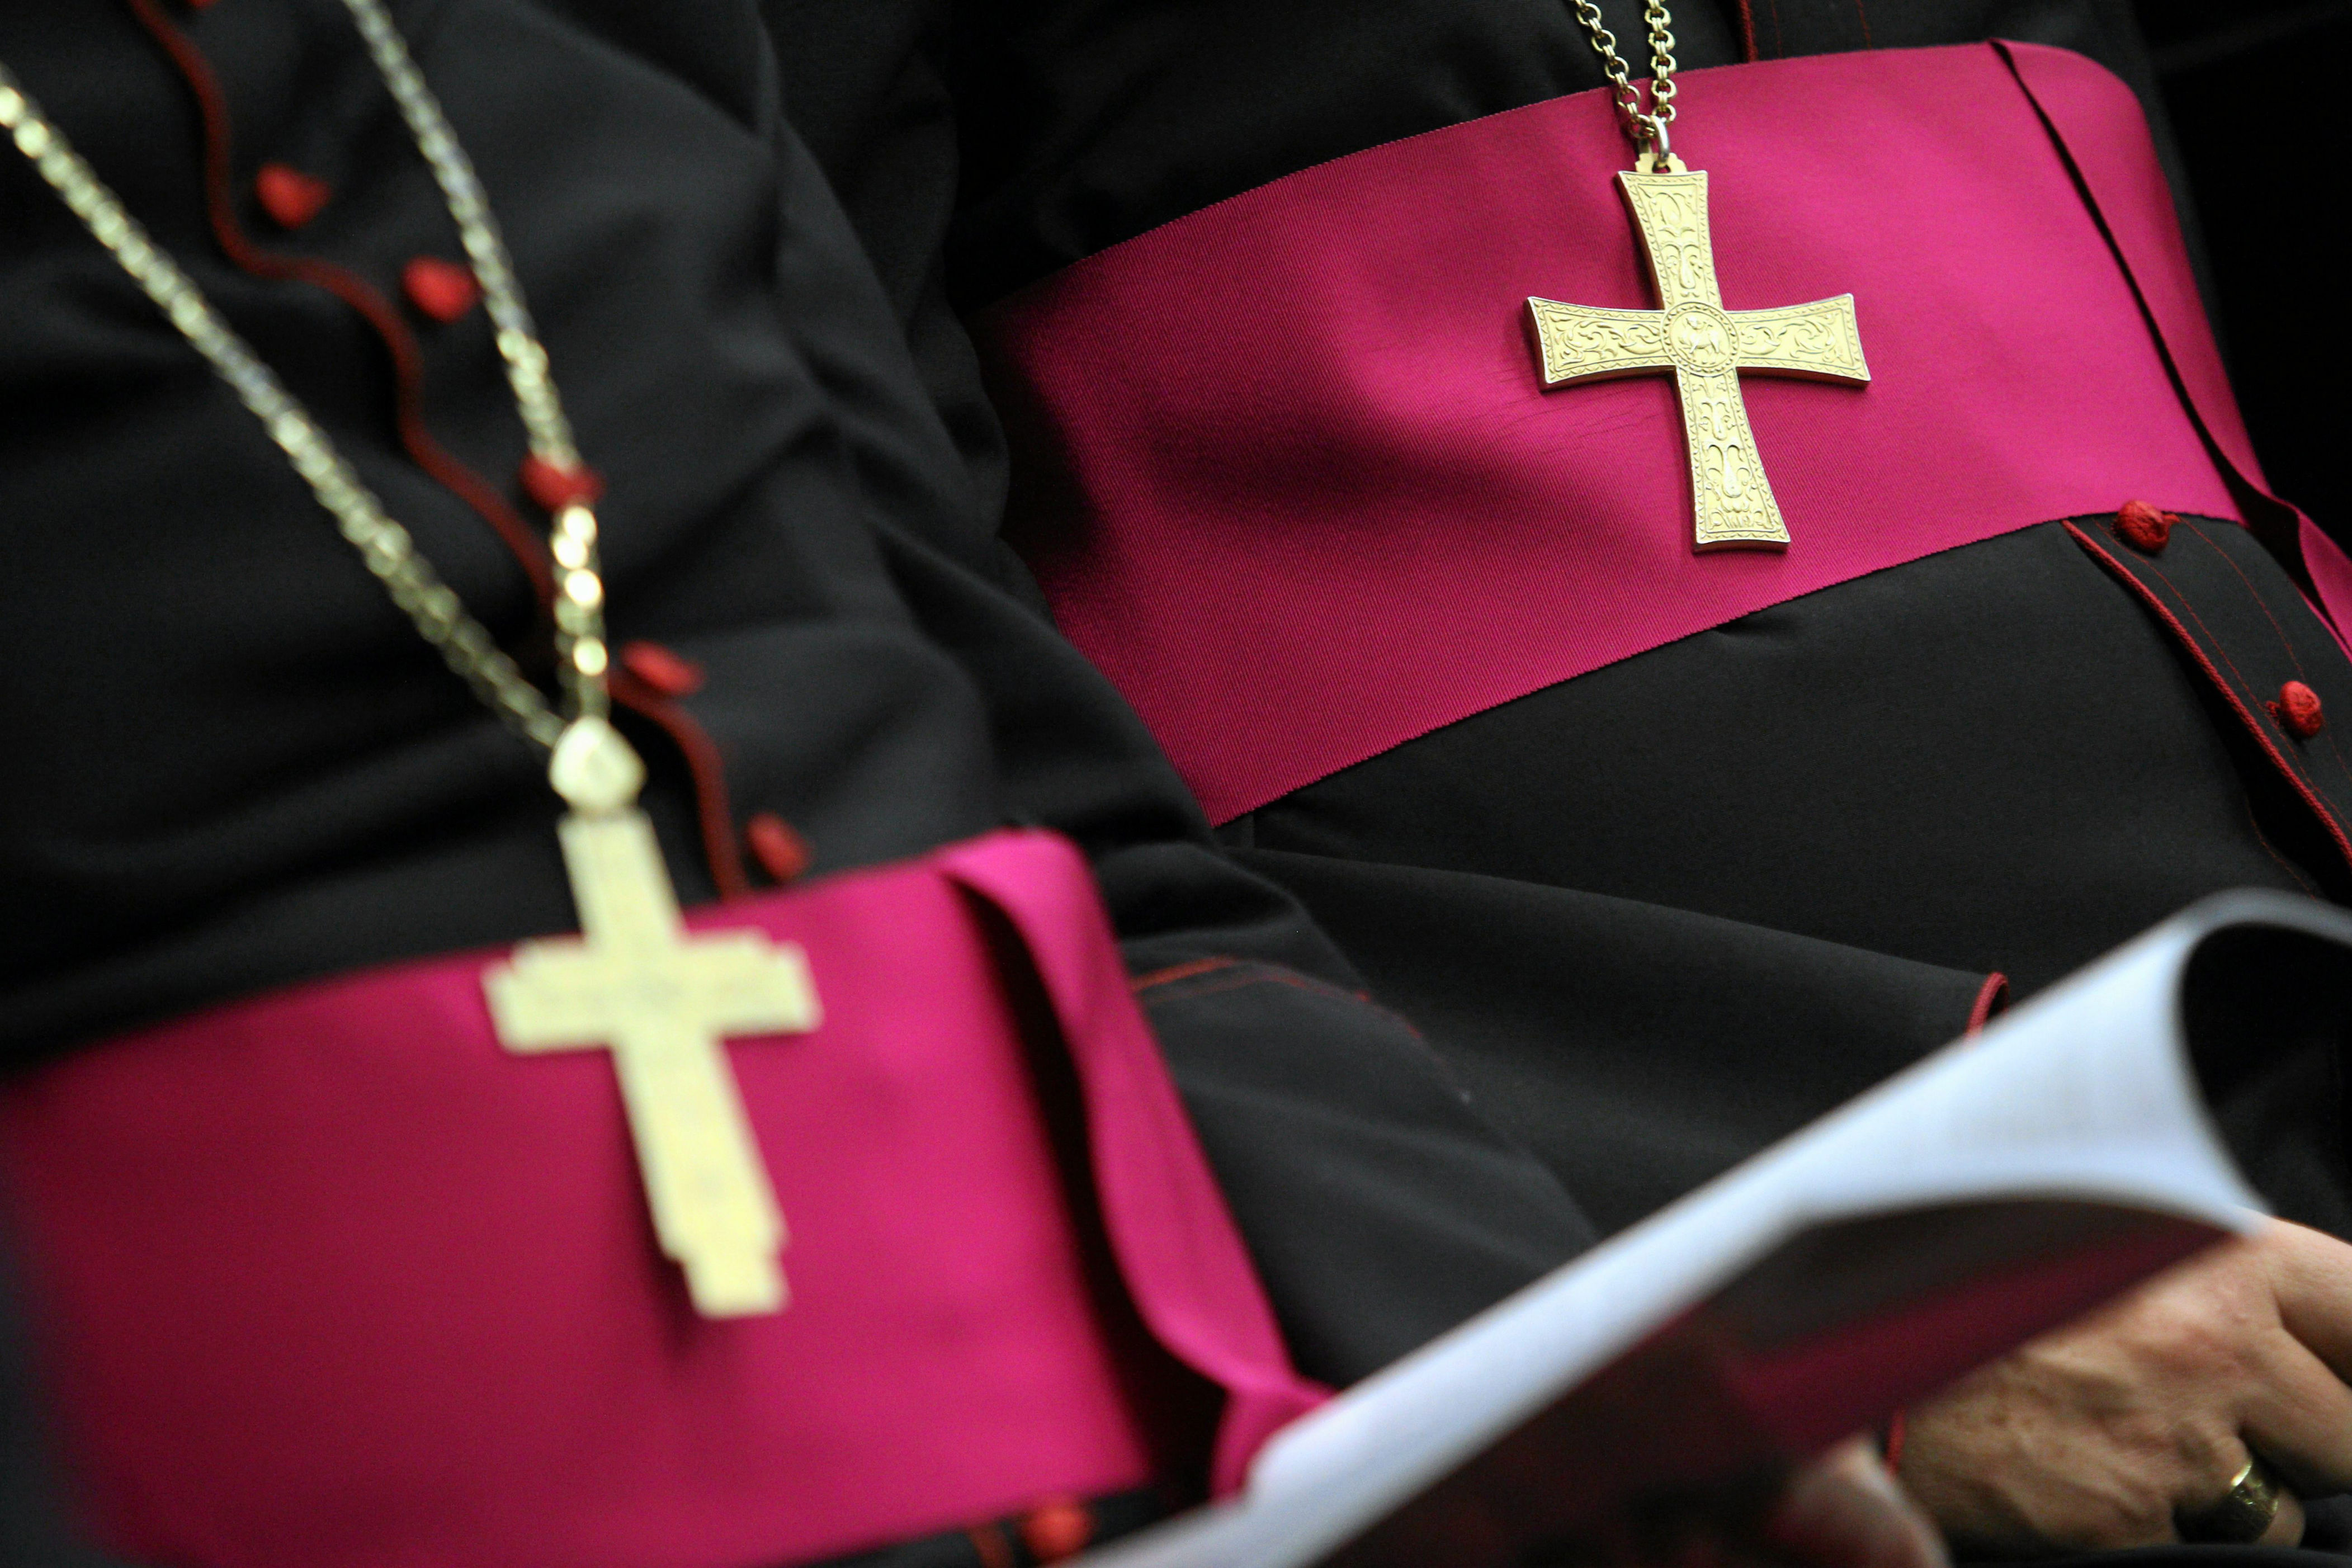 prymas kanady oskarżony o molestowanie seksualne. diecezja quebecu wydała oświadczenie